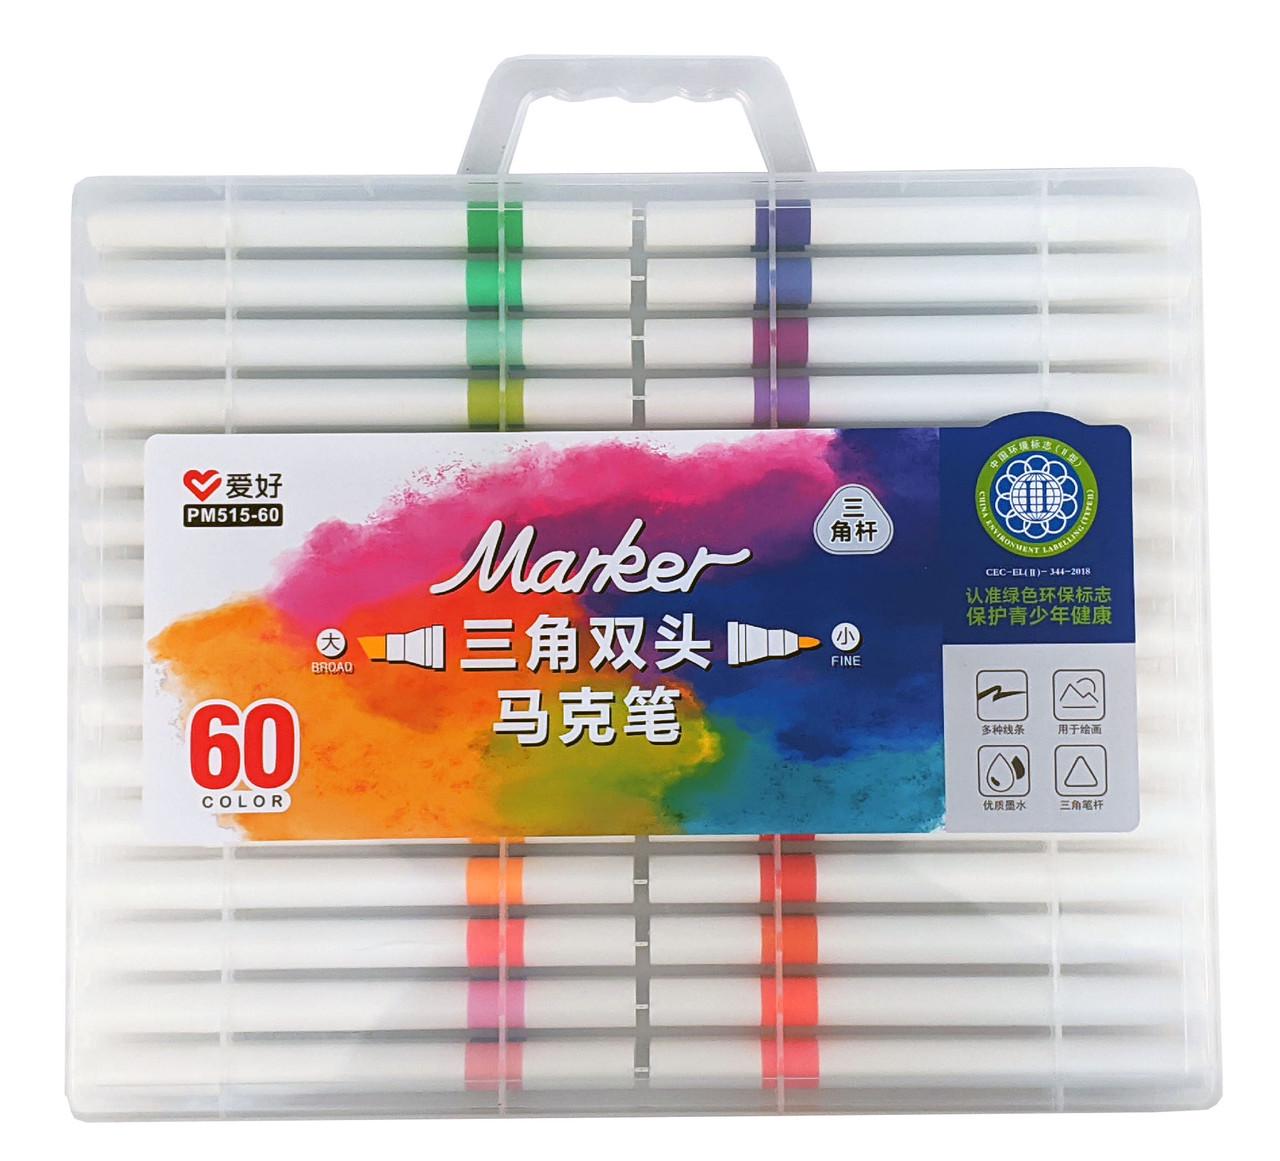 Набор скетч-маркеров для рисования двусторонних Aihao sketchmarker 60 шт. (PM515-60) - фото 1